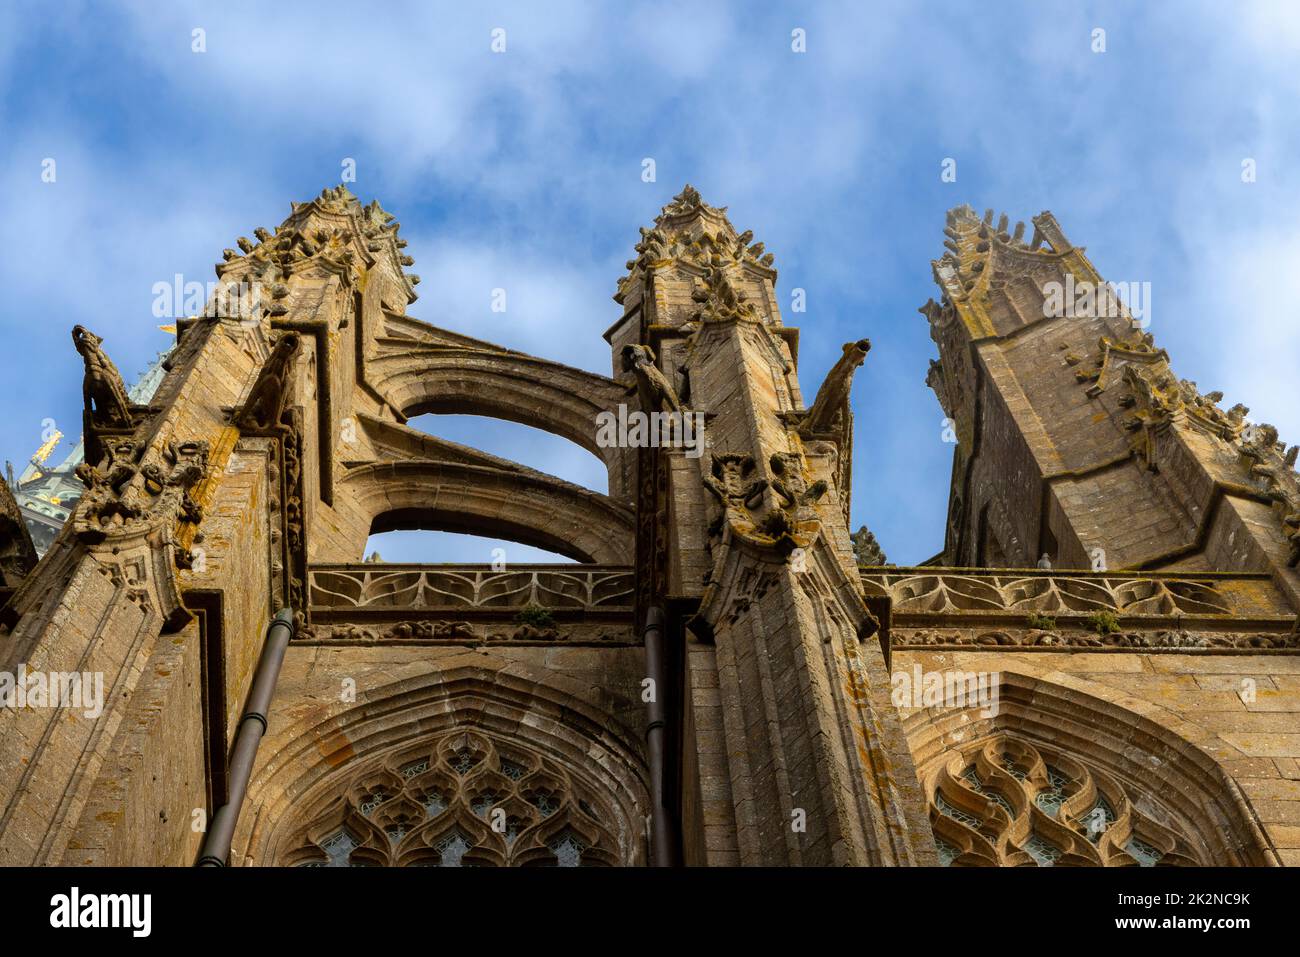 Gekäkelte Zinnen und Wasserspeier, architektonische Details der mittelalterlichen Abtei Le Mont Saint-Michel, Avranches, Normandie, Frankreich. Stockfoto